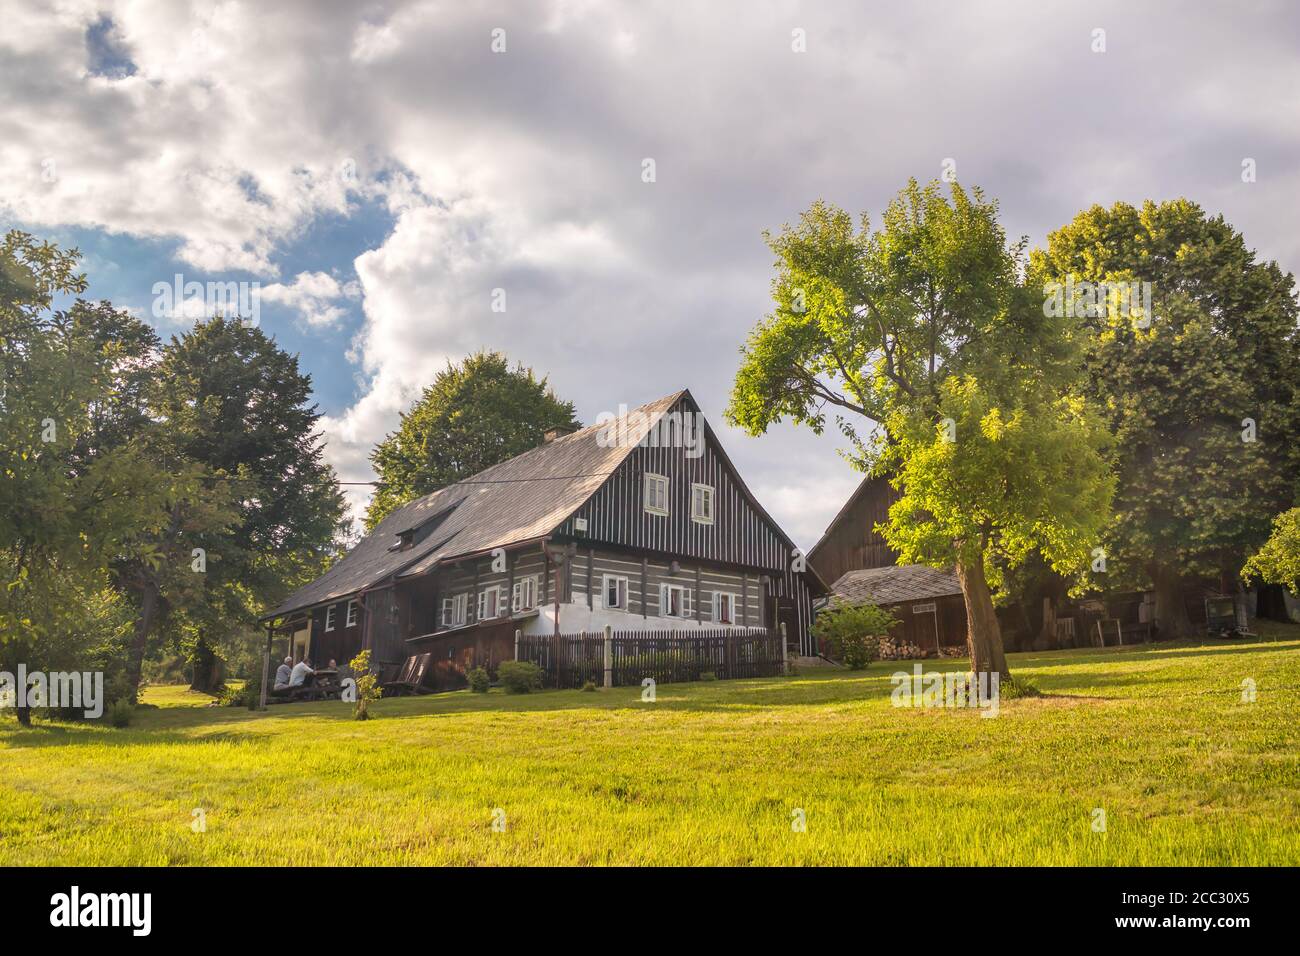 cottage à colombages - maison tchèque traditionnelle à colombages avec arbres à proximité Banque D'Images